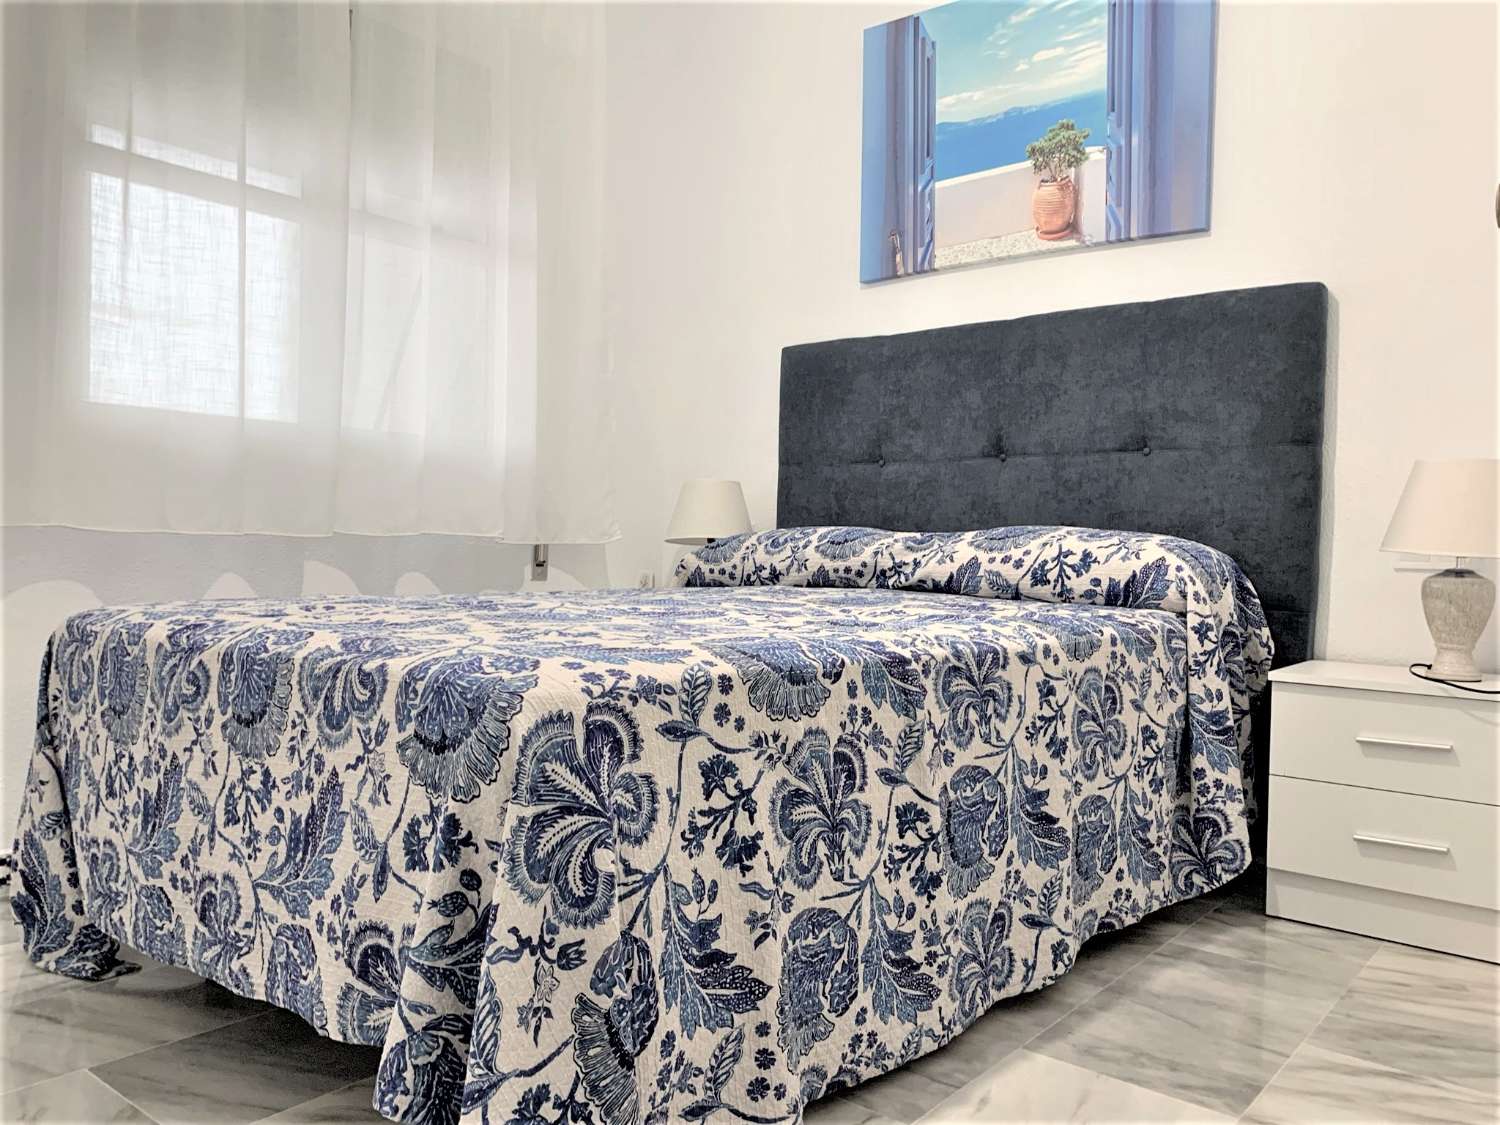 Geweldig appartement met 3 slaapkamers op het strand van Fuengirola, zwembad, airconditioning, wi-fi